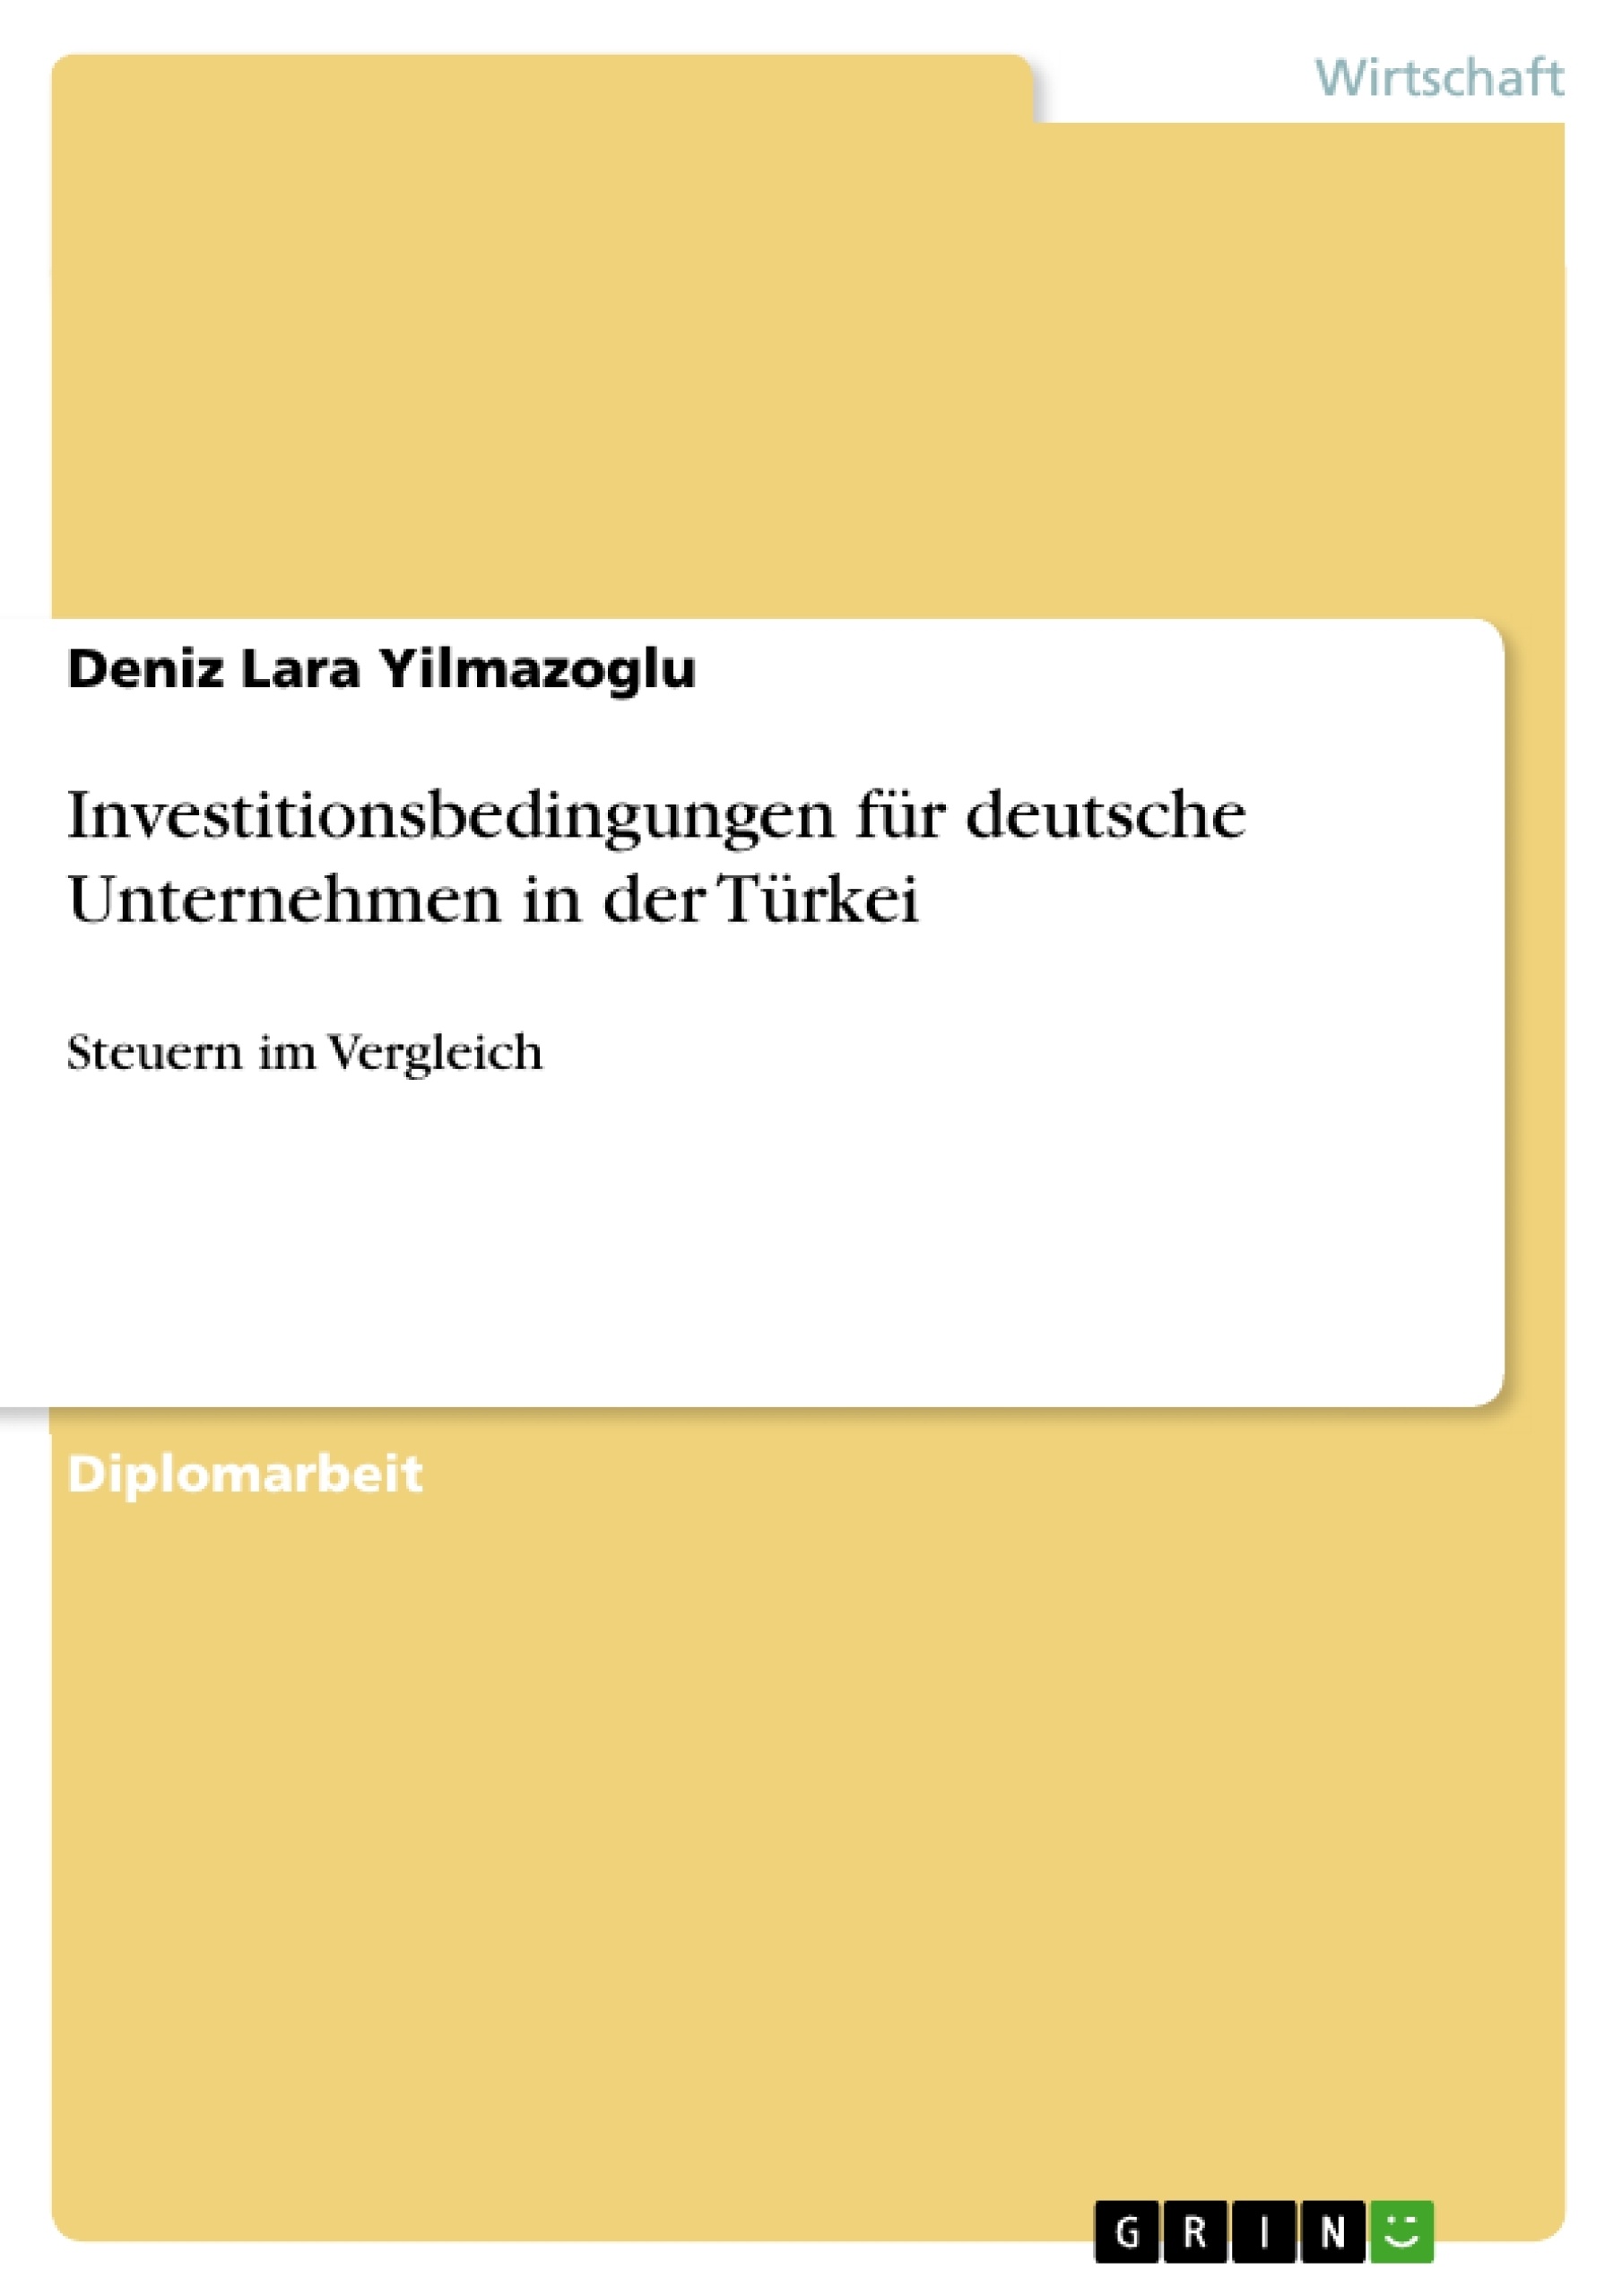 Title: Investitionsbedingungen für deutsche Unternehmen in der Türkei